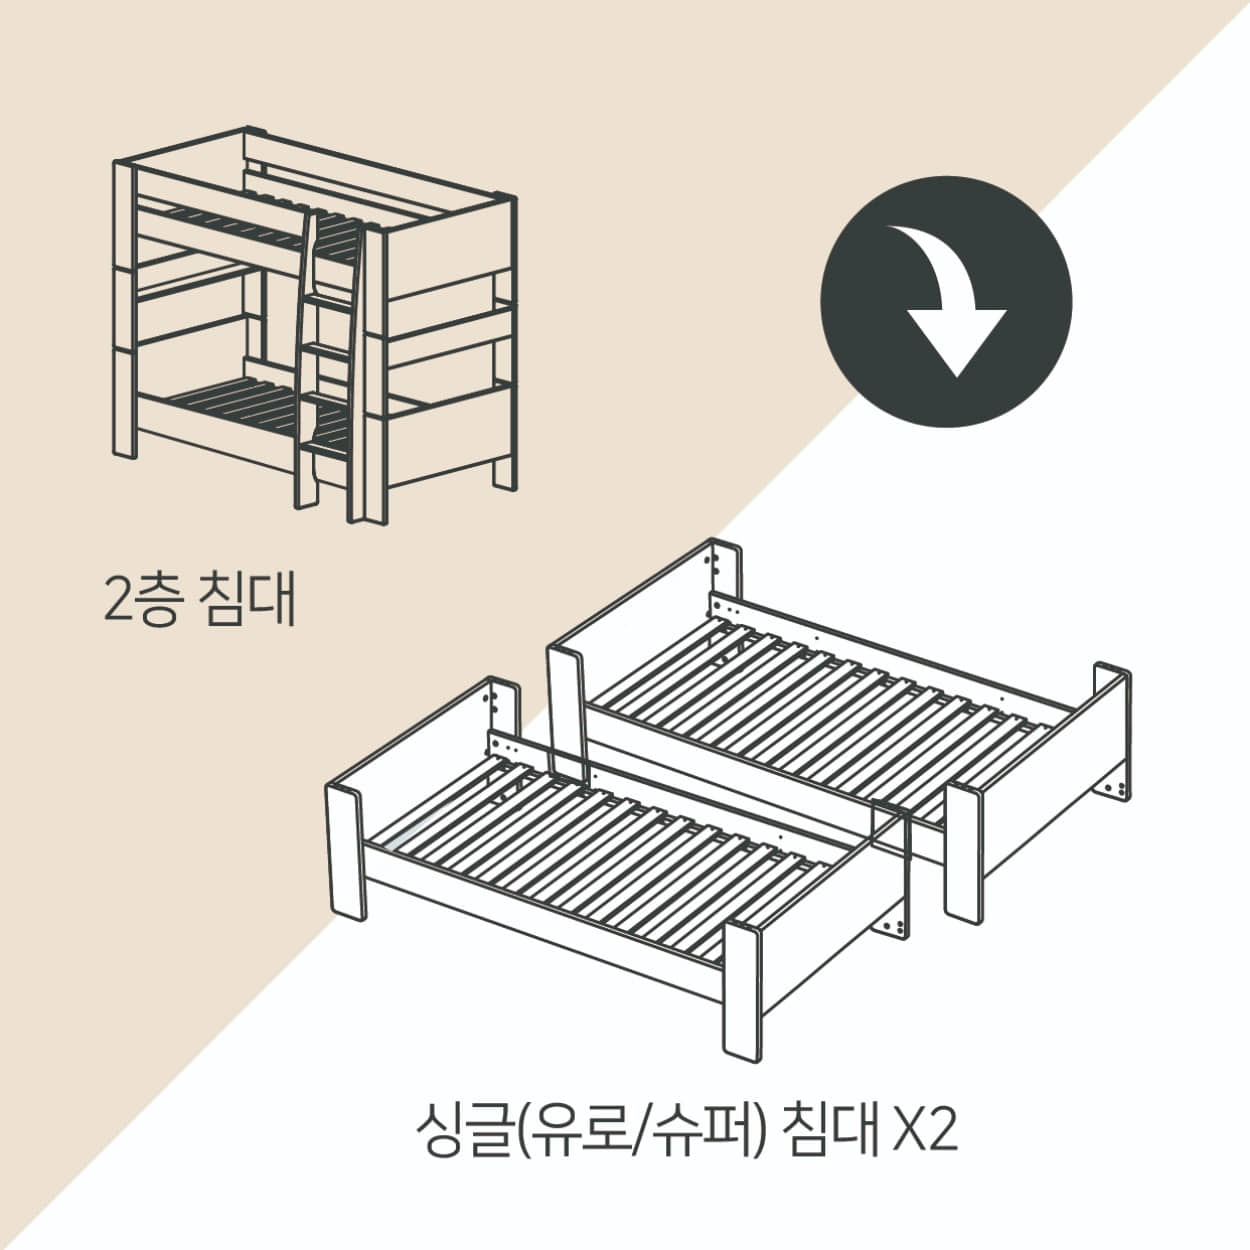 2층침대→①싱글 ②싱글(추가변형선택)